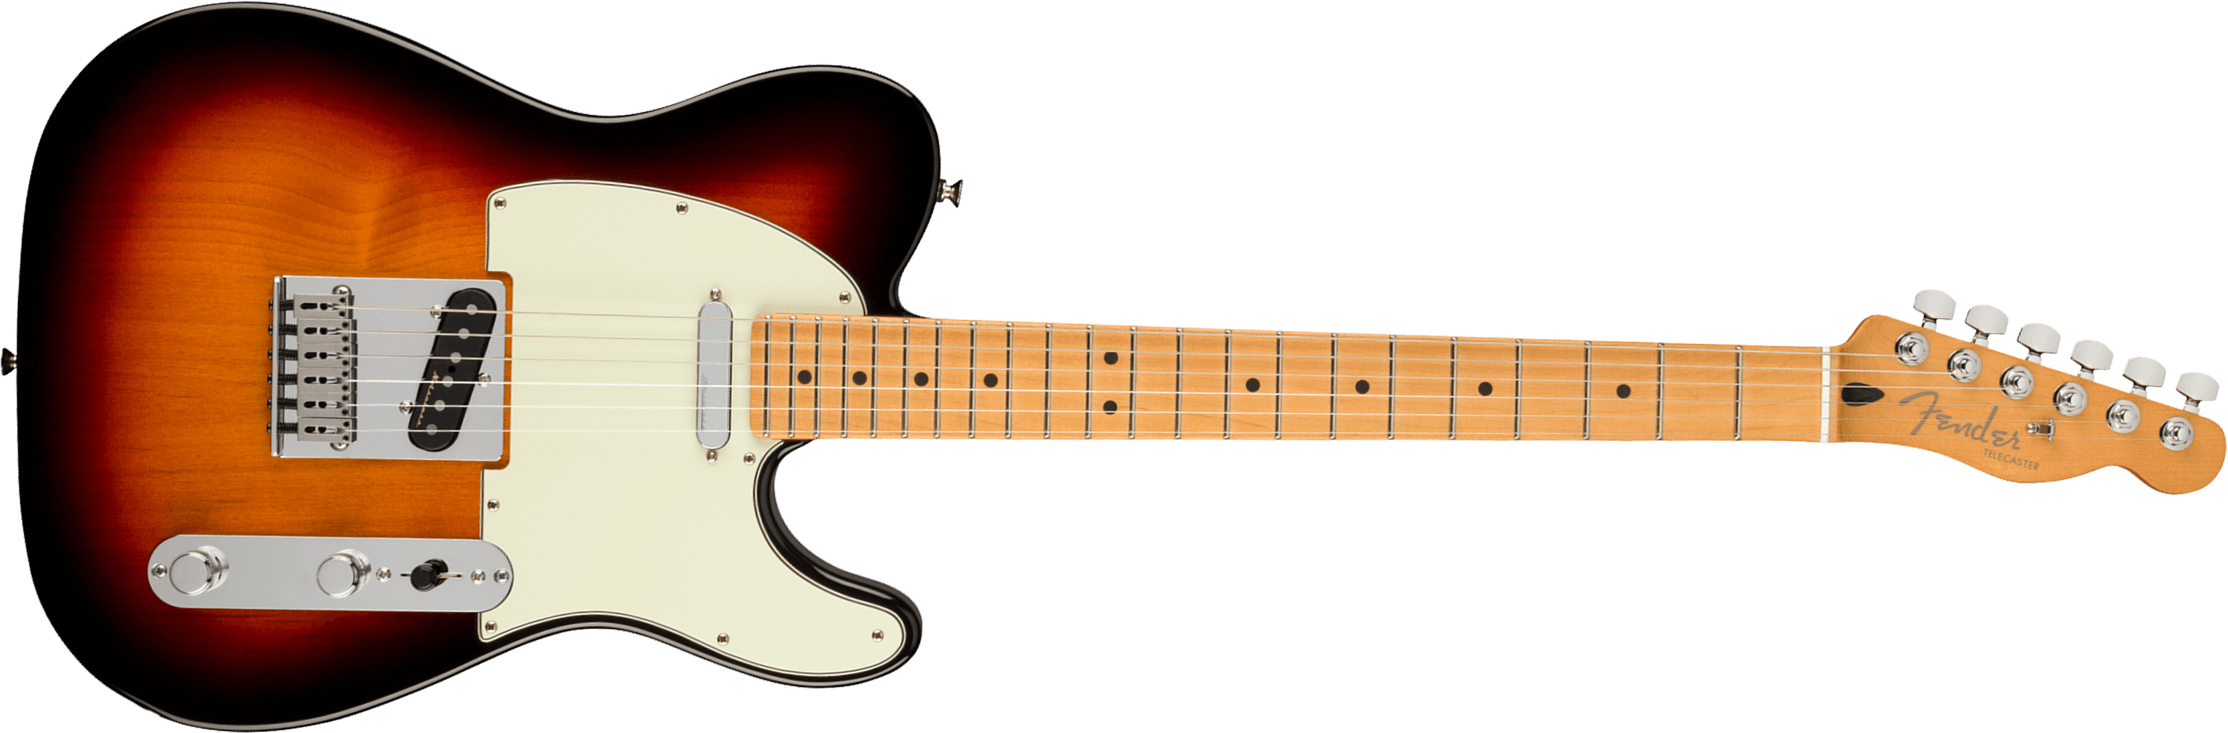 Fender Tele Player Plus Mex 2s Ht Mn - 3-color Sunburst - Guitarra eléctrica con forma de tel - Main picture